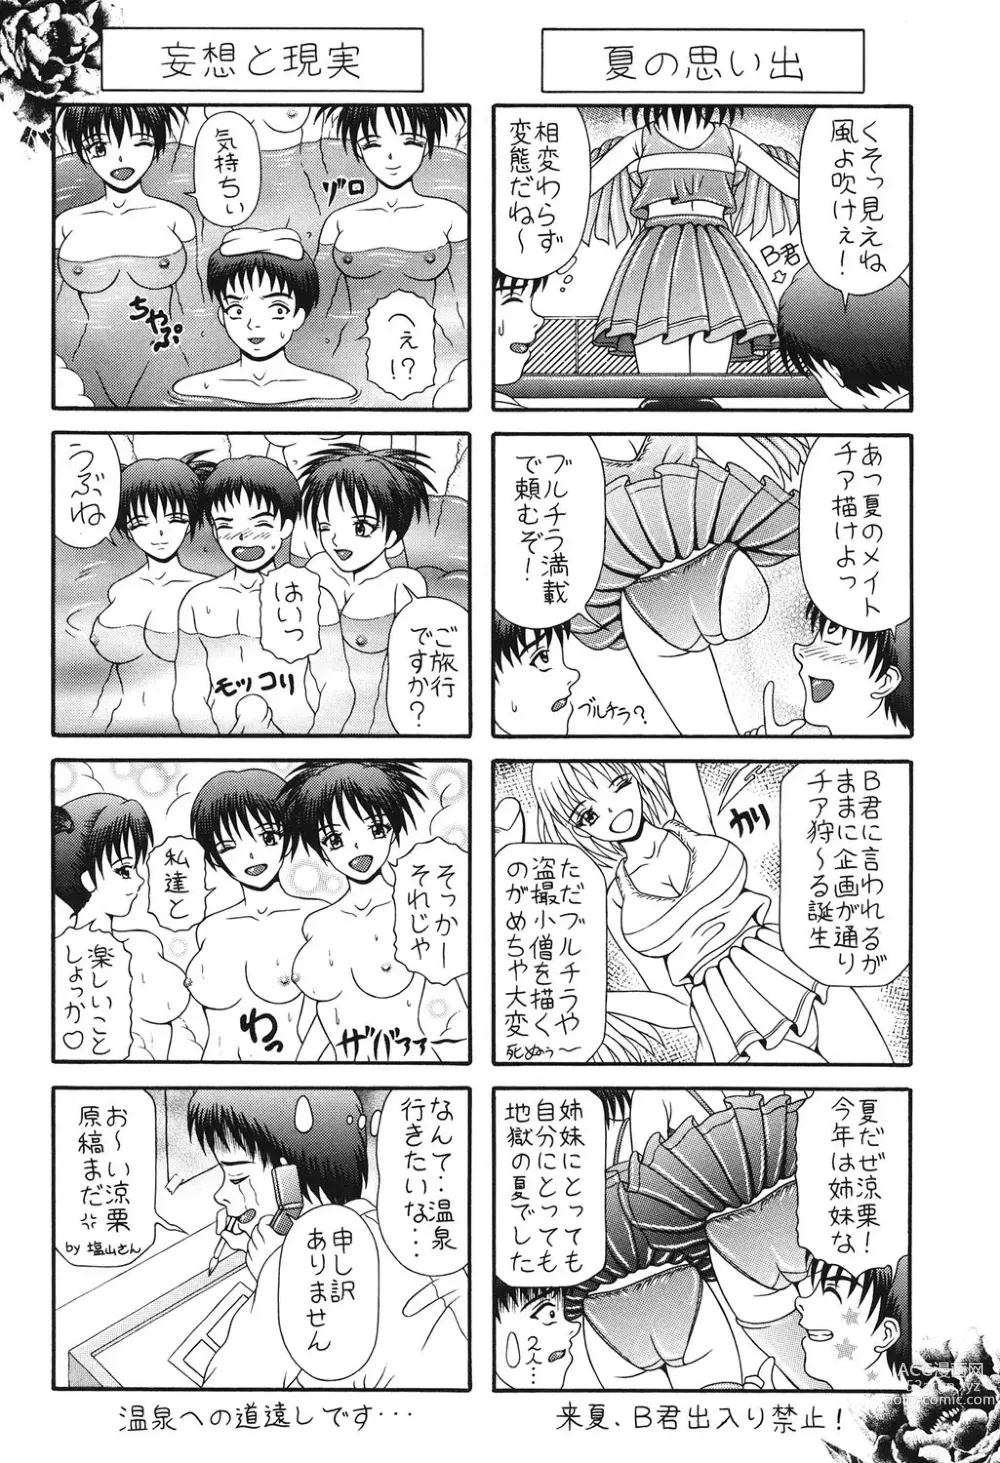 Page 147 of manga Todokanai Zekkyou - Nicht Erreichen Schreien